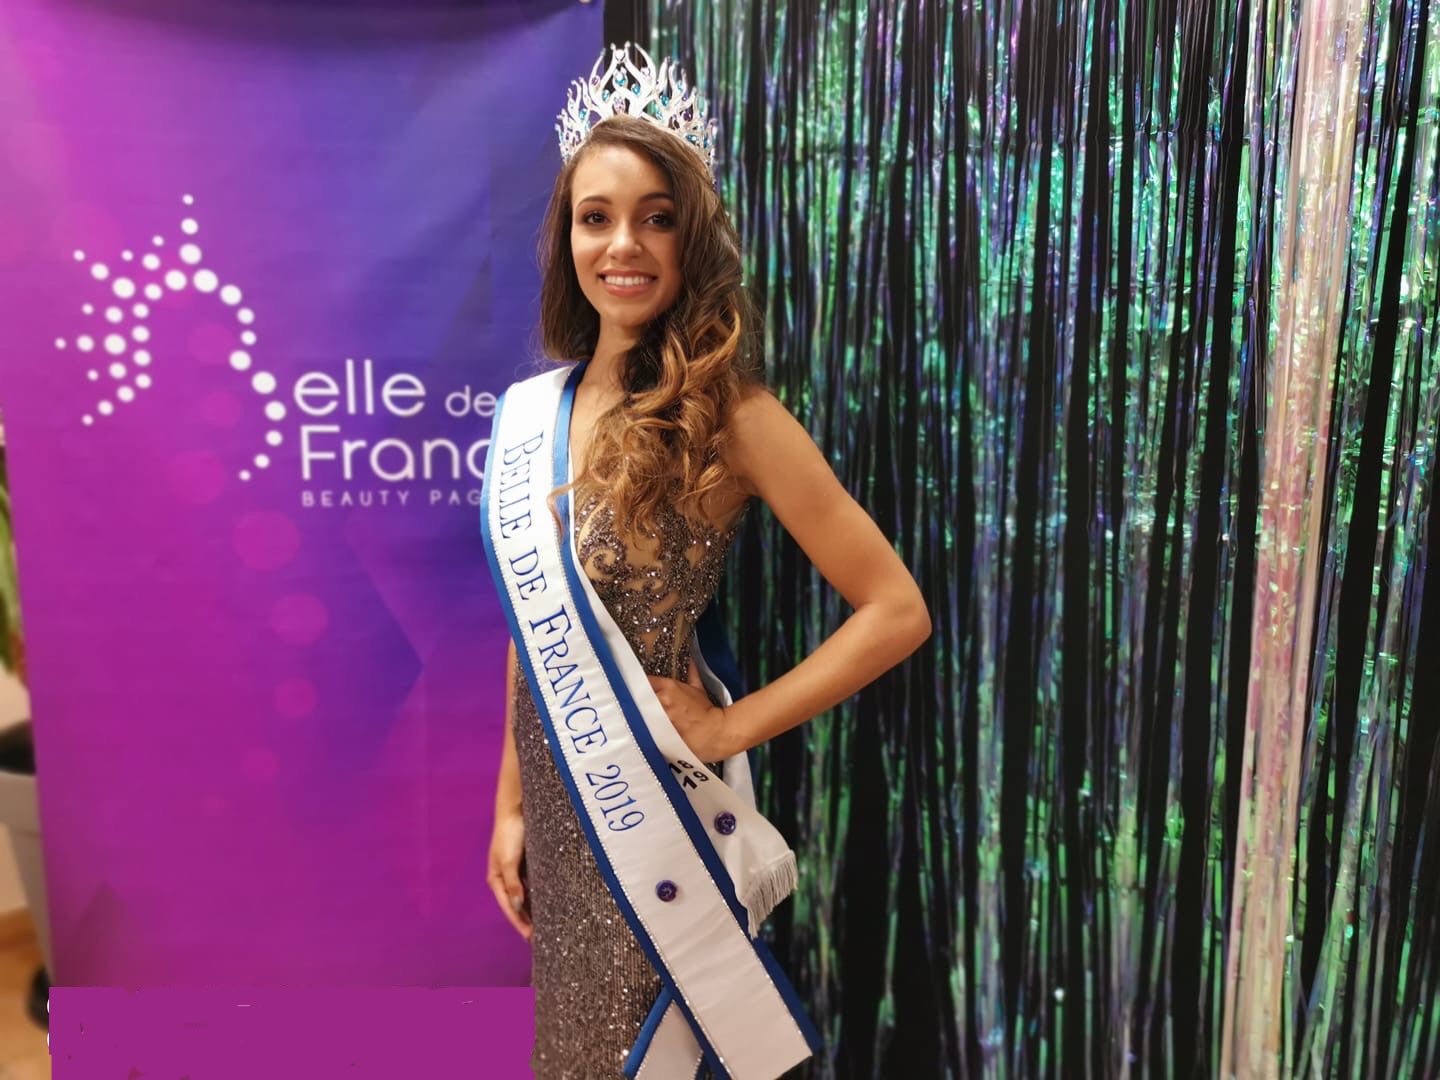 La Réunionnaise Adélaïde de Boisvilliers élue Belle de France 2019